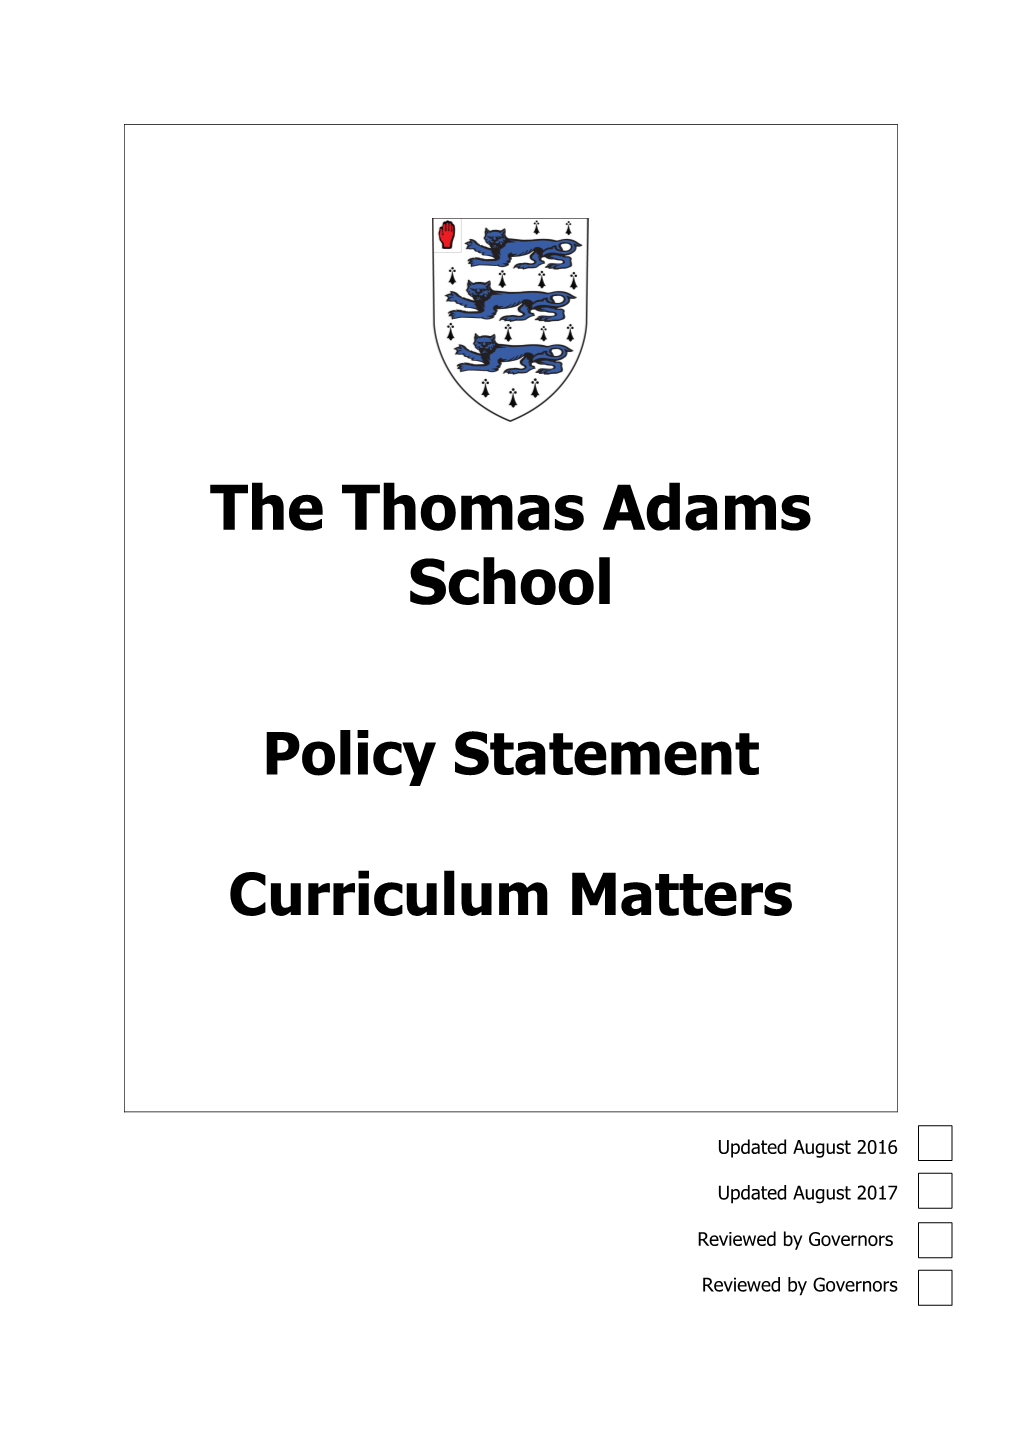 The Thomas Adams School